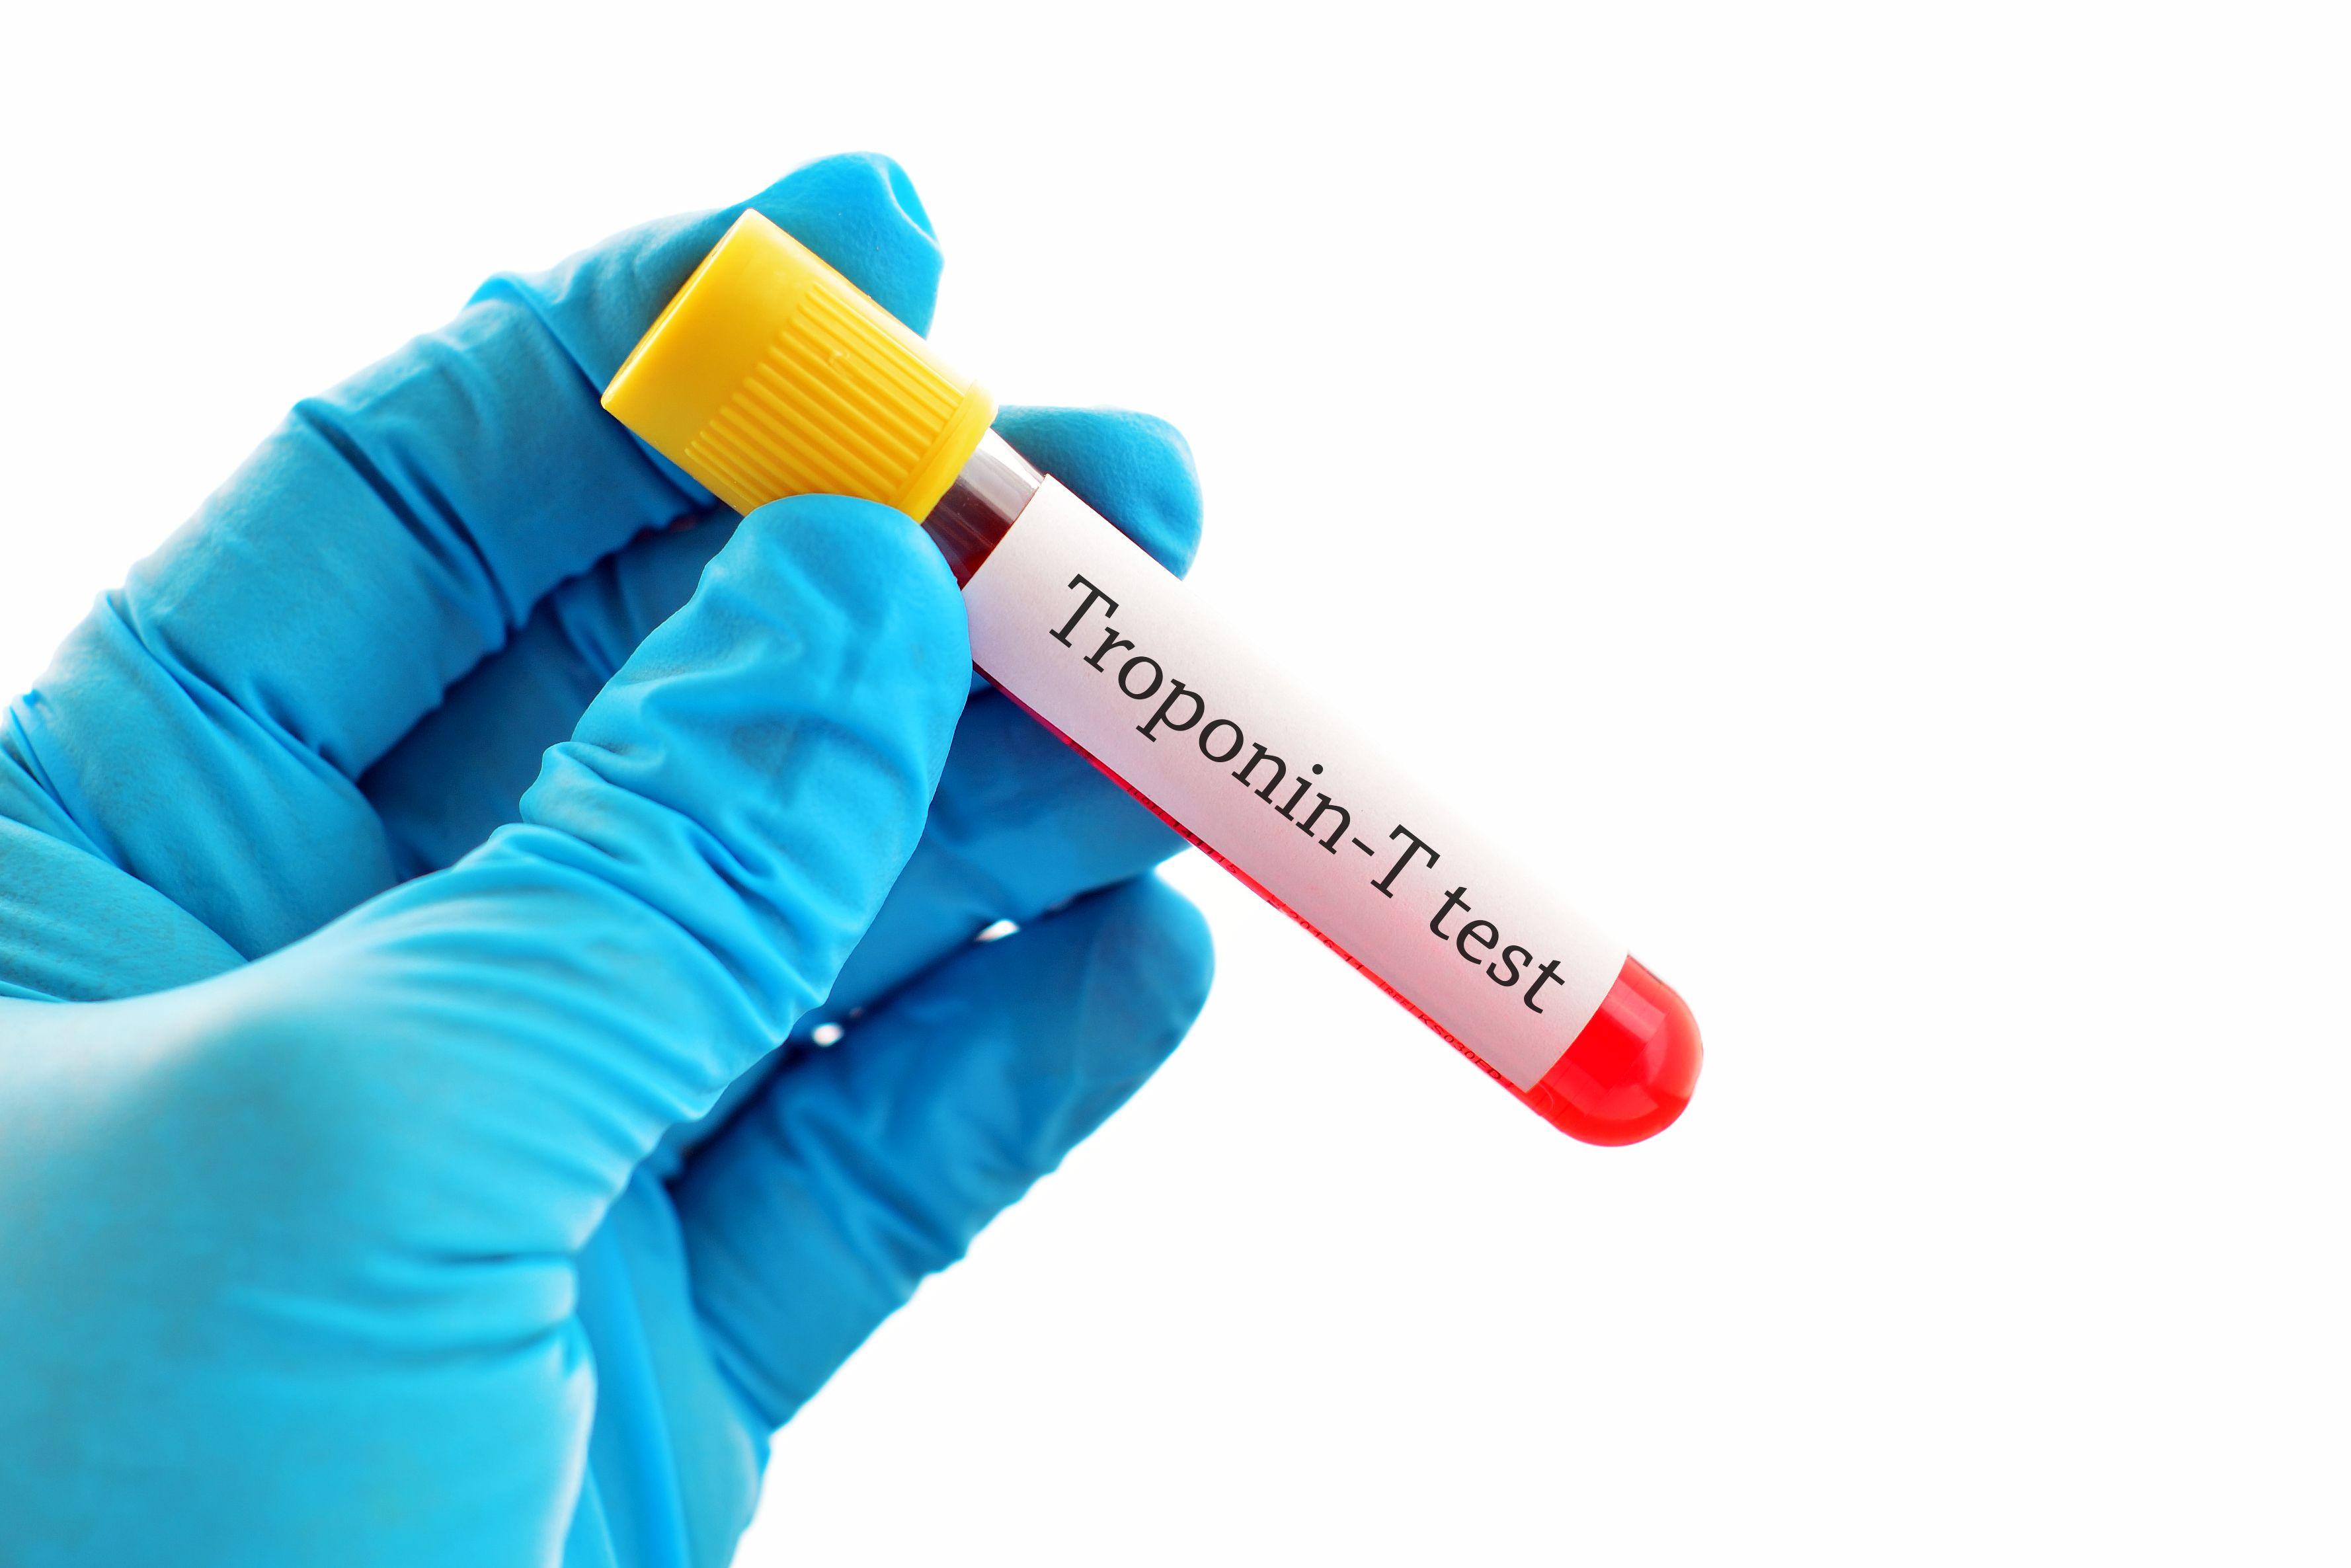 Blutprobe für Troponin-T-Test, Herzmarkertest